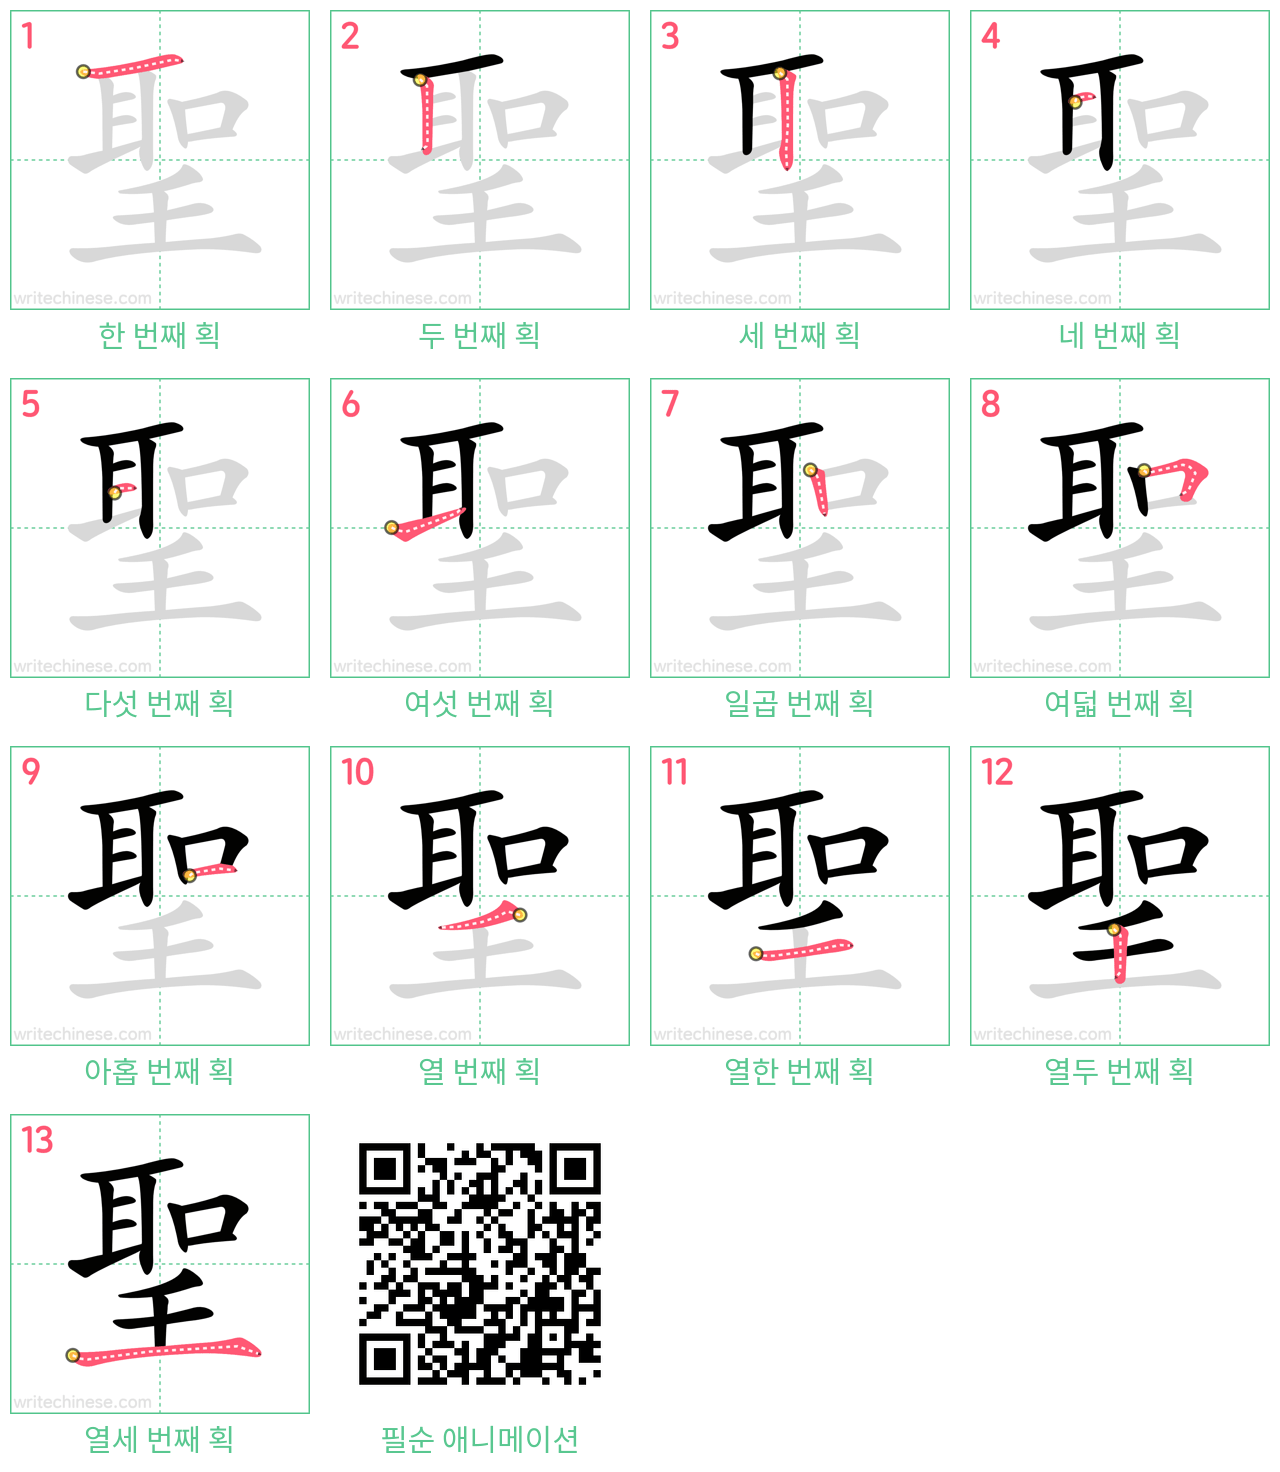 聖 step-by-step stroke order diagrams